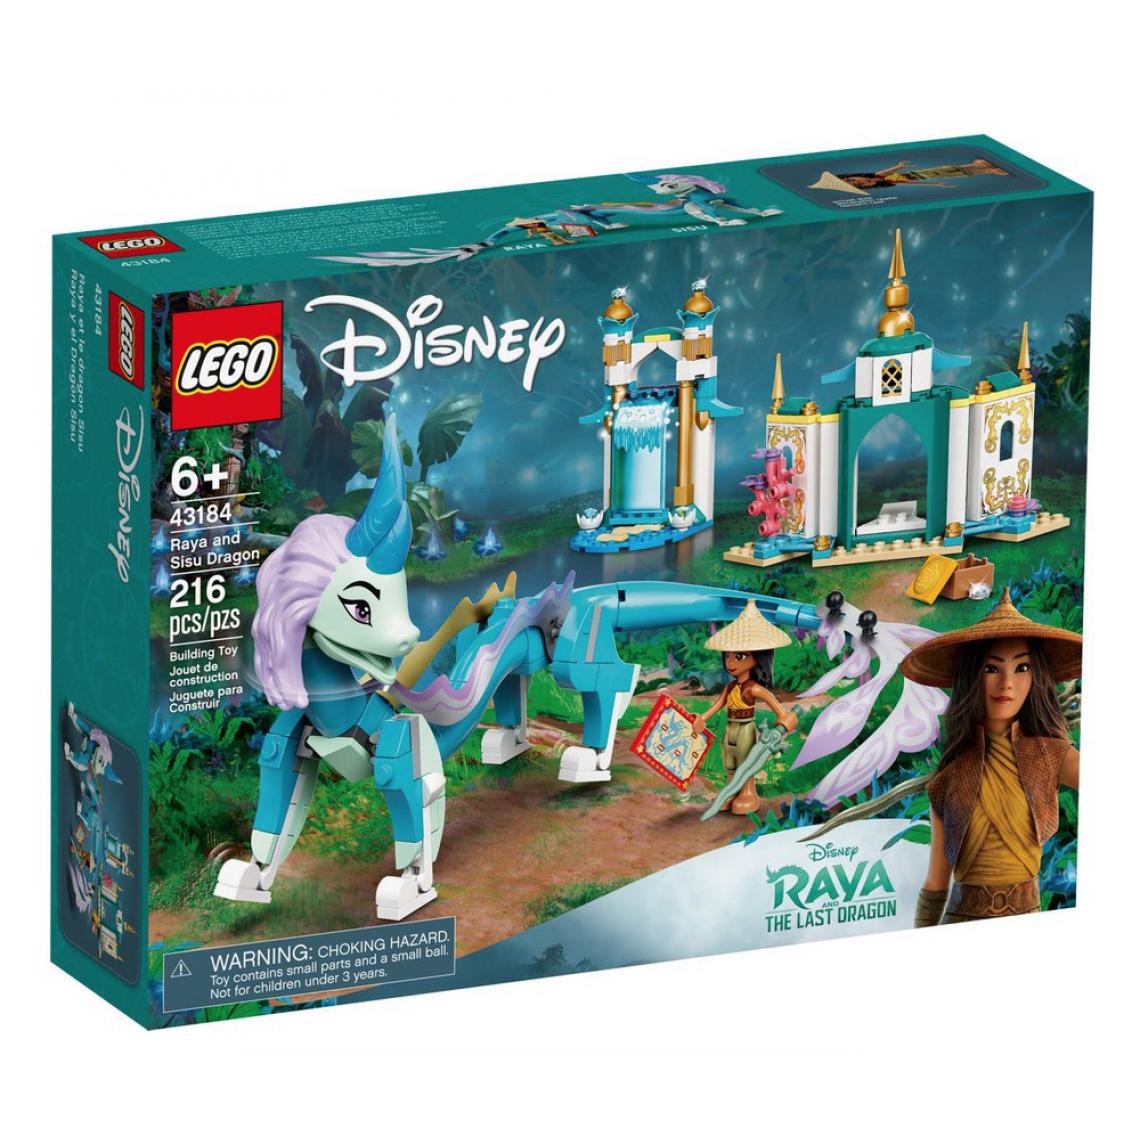 Lego - 43184 Raya et le dragon Sisu, Lego Disney Princess - Briques Lego